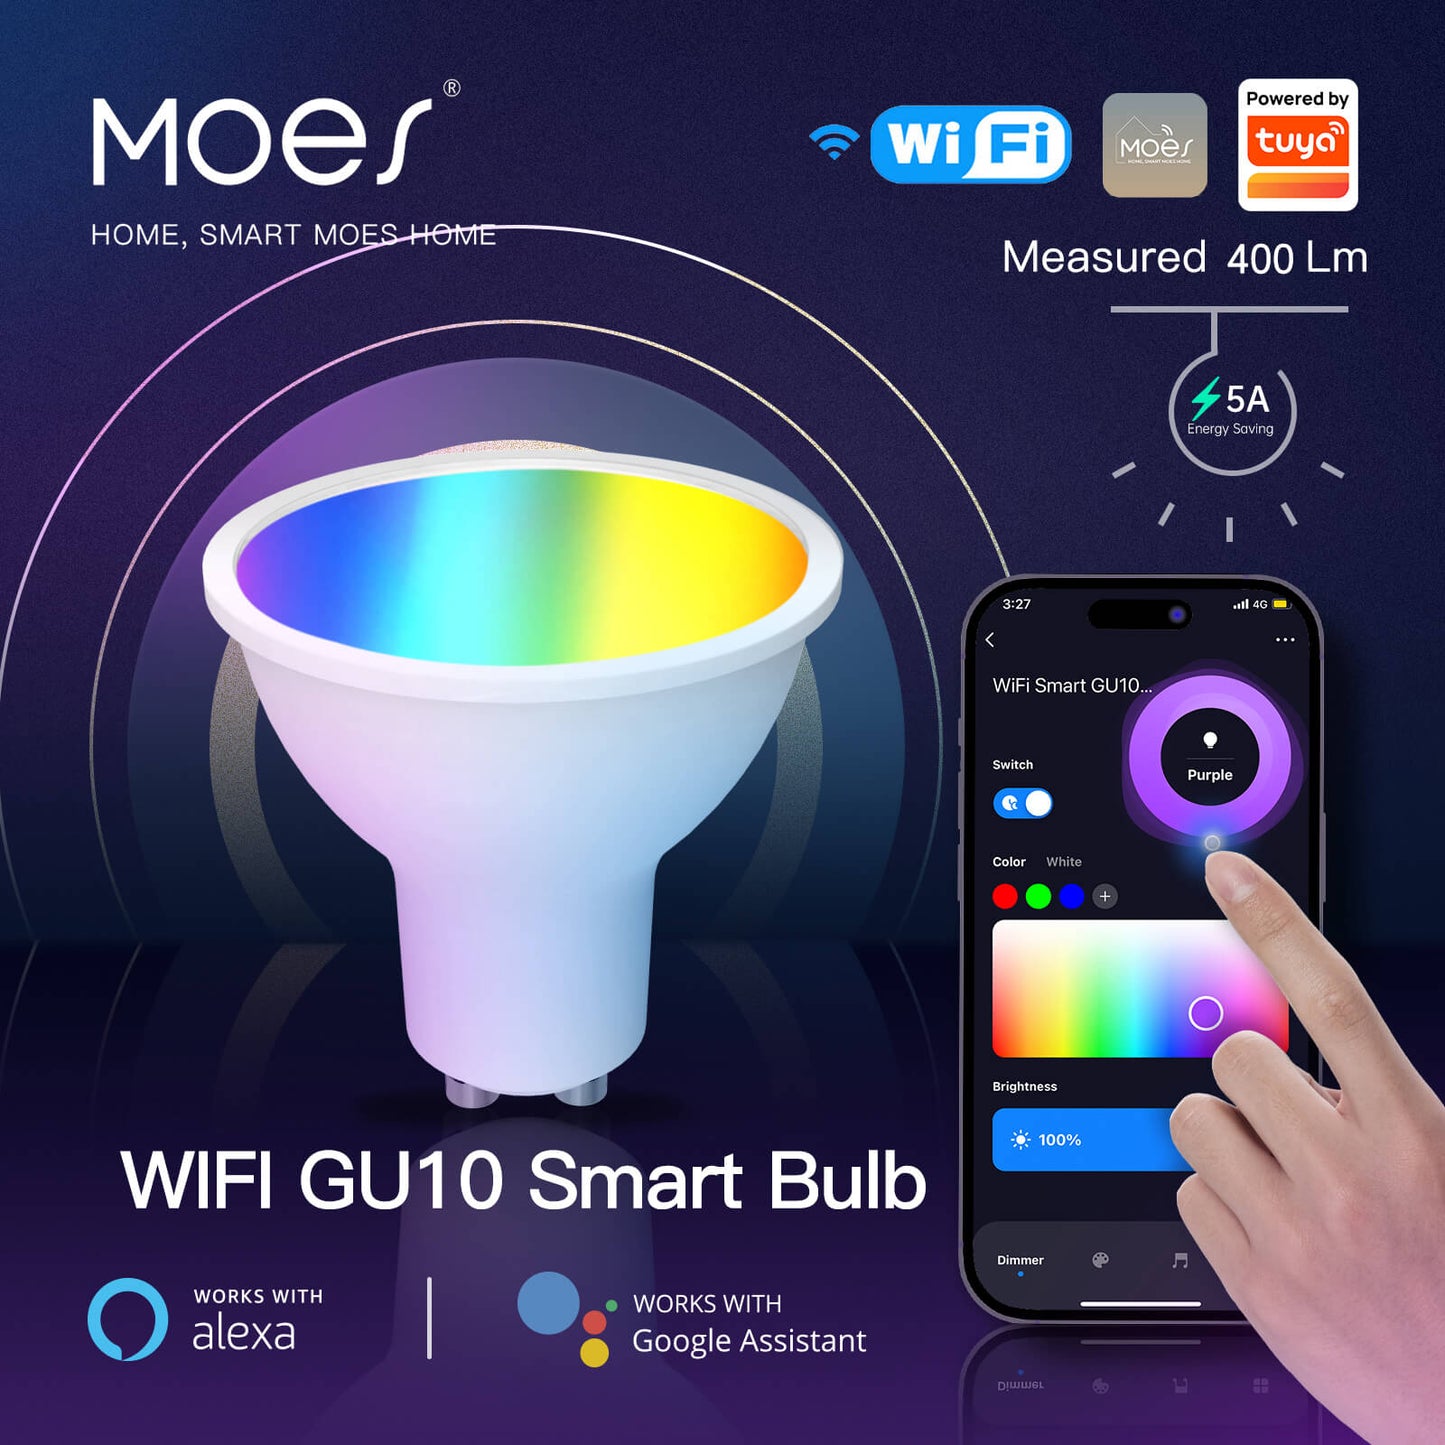 WIFI GU10 Smart Bulb - MOES